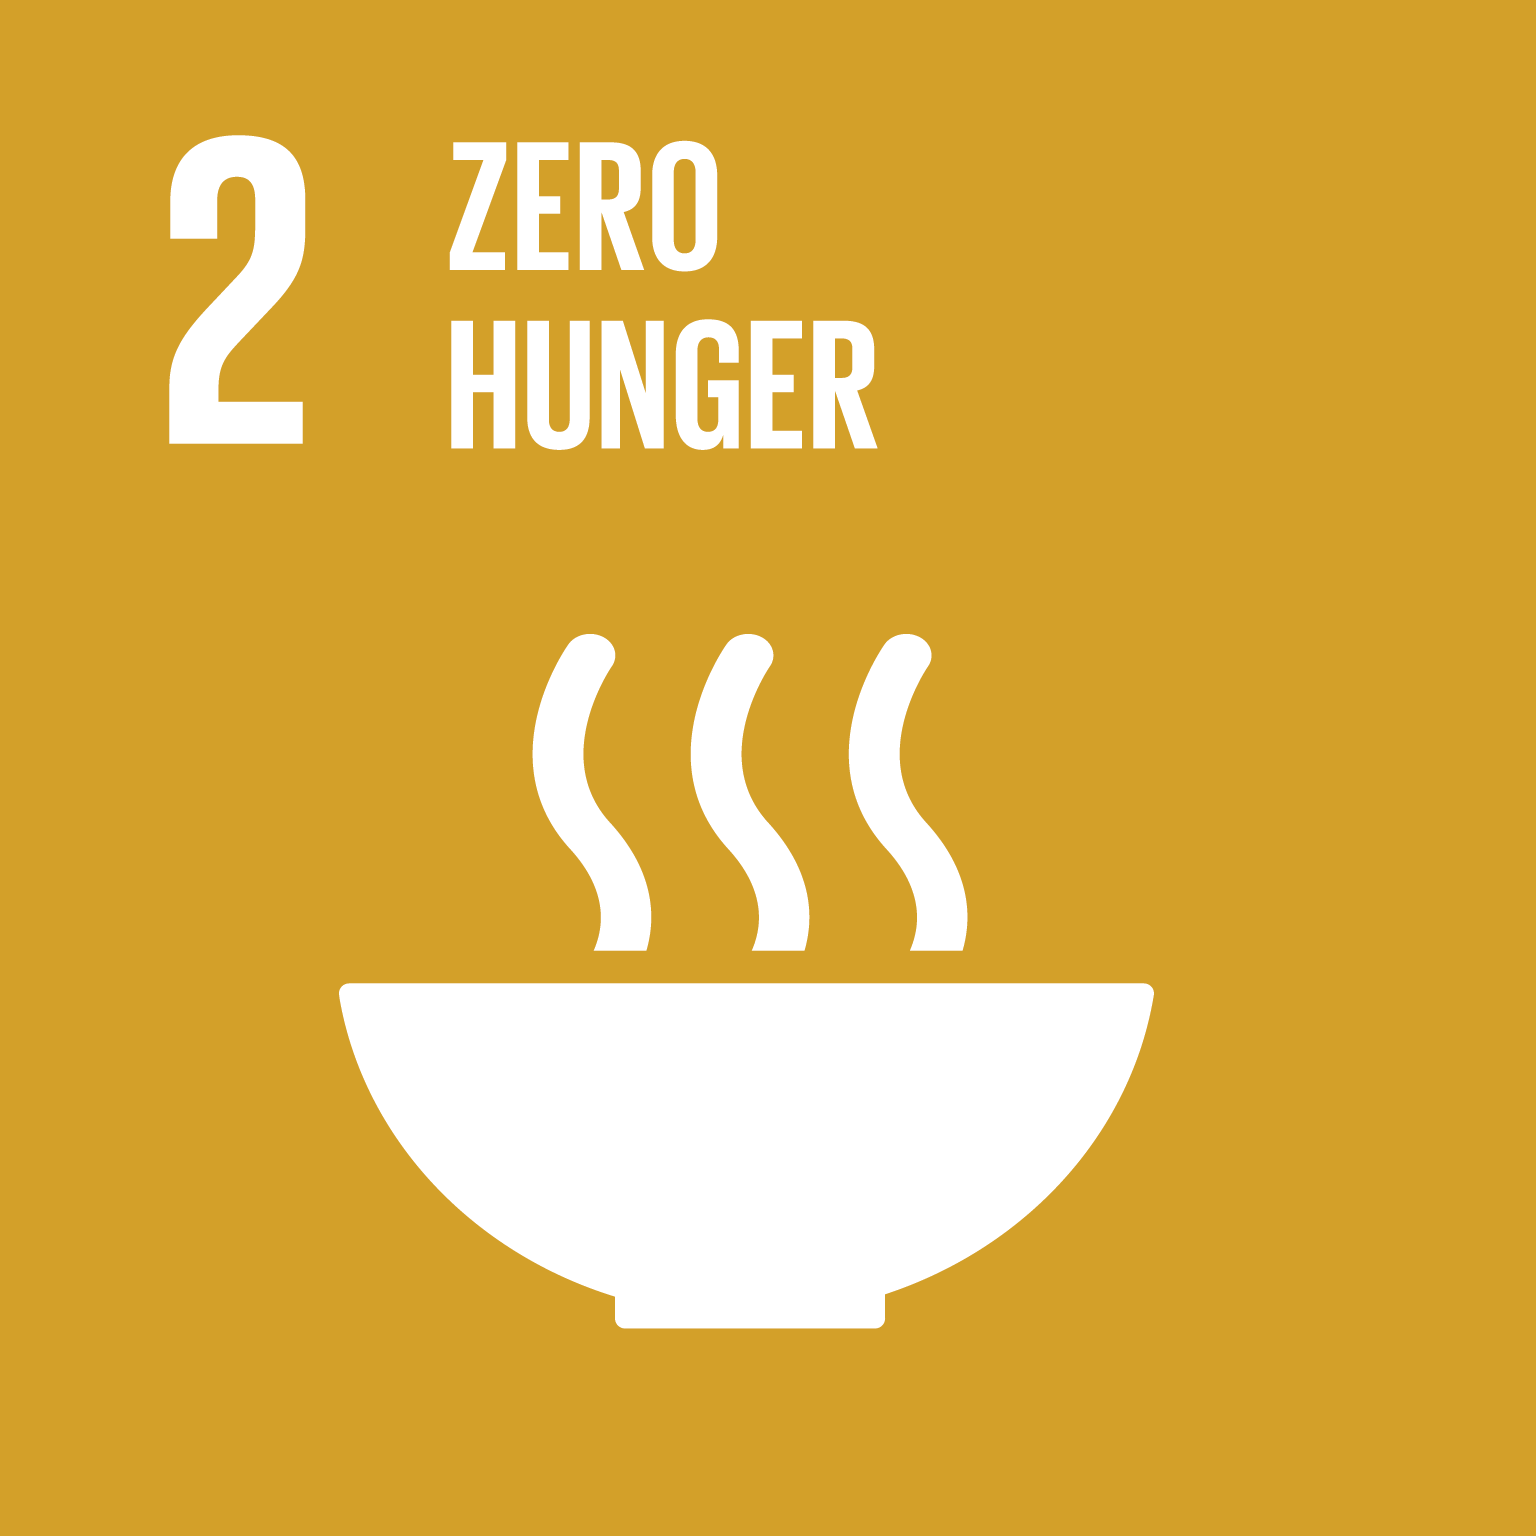 02 Zero hunger